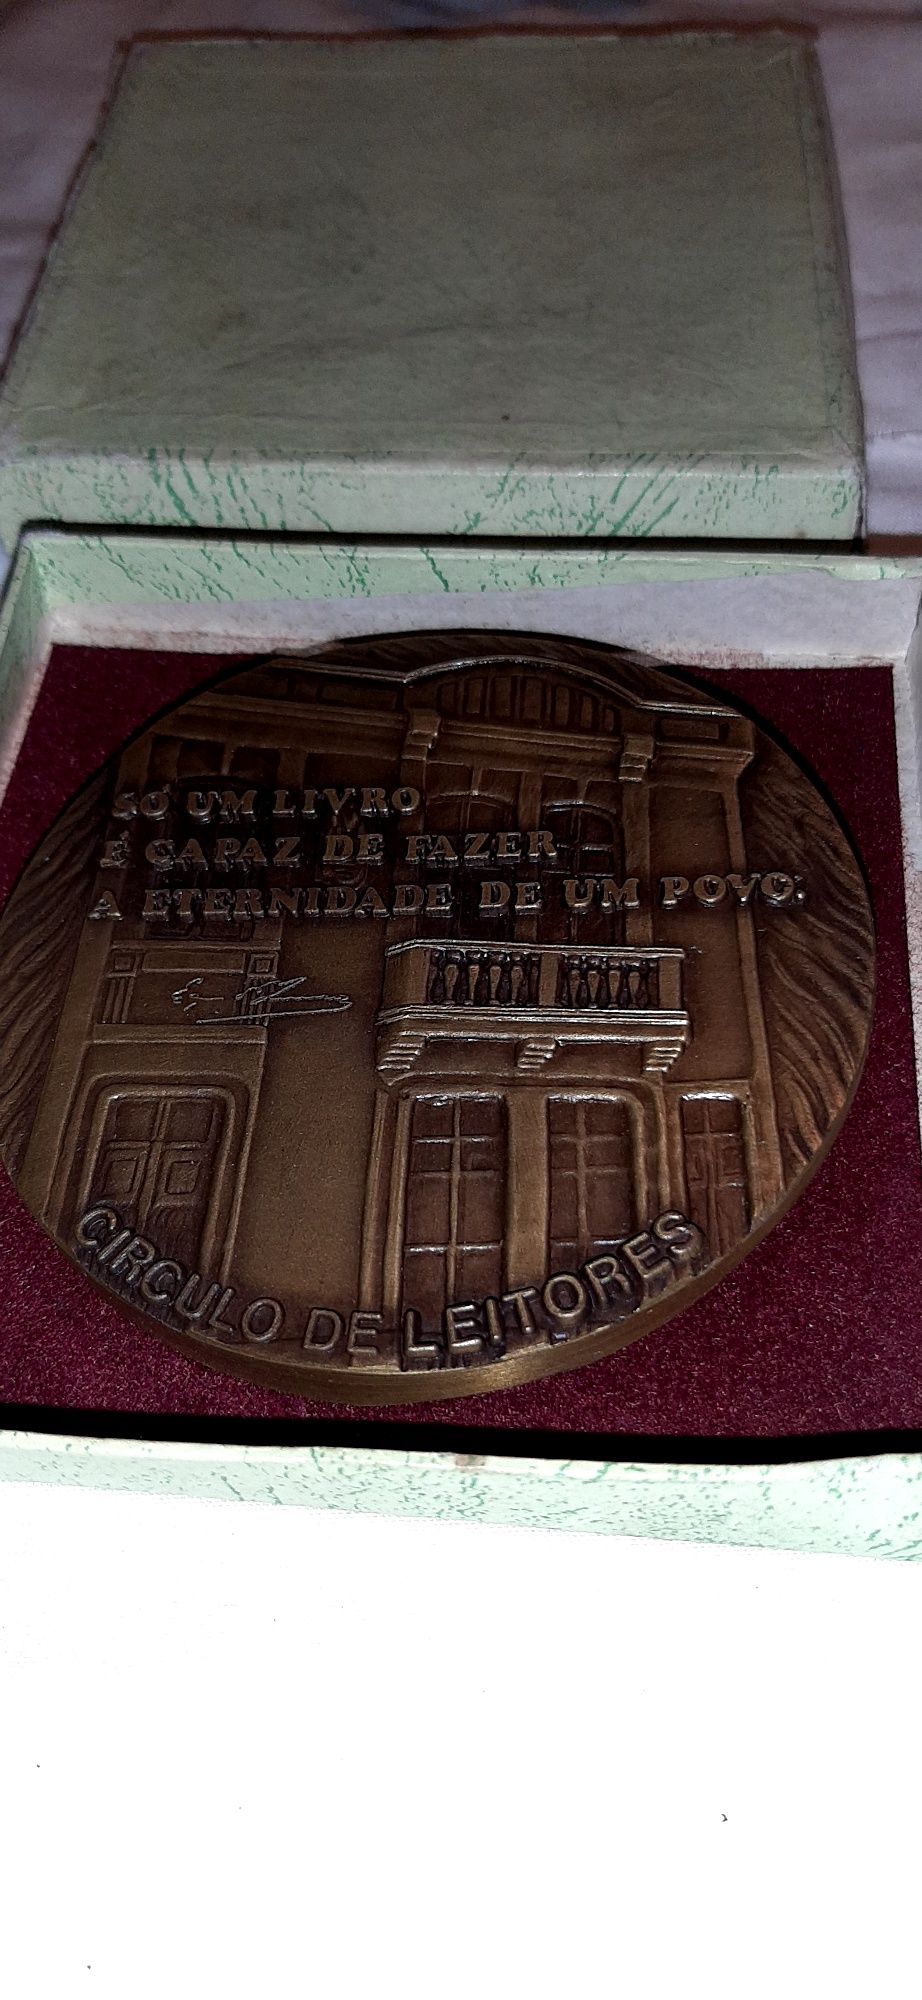 Medalha comemorativa sobre a vida e obra do grande Eça de Queiroz